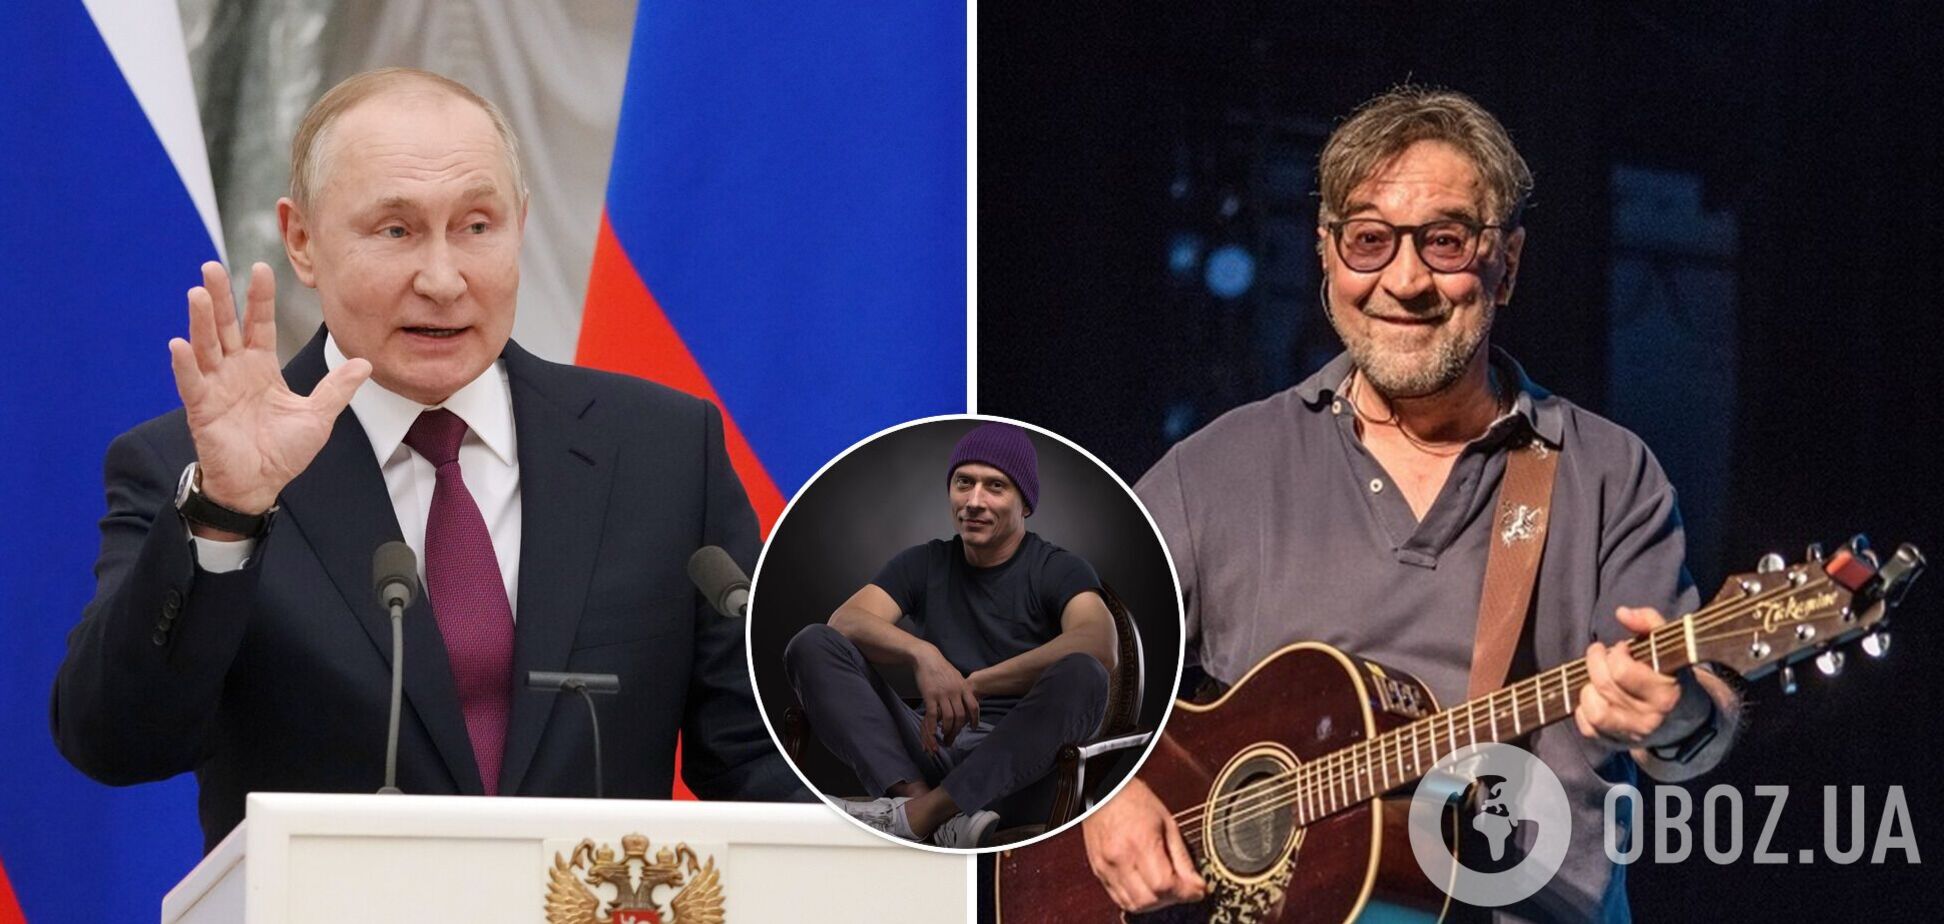 Российский художник показал истинное лицо Путина. За это сравнение лидера ДДТ оштрафовали на 50 000 рублей